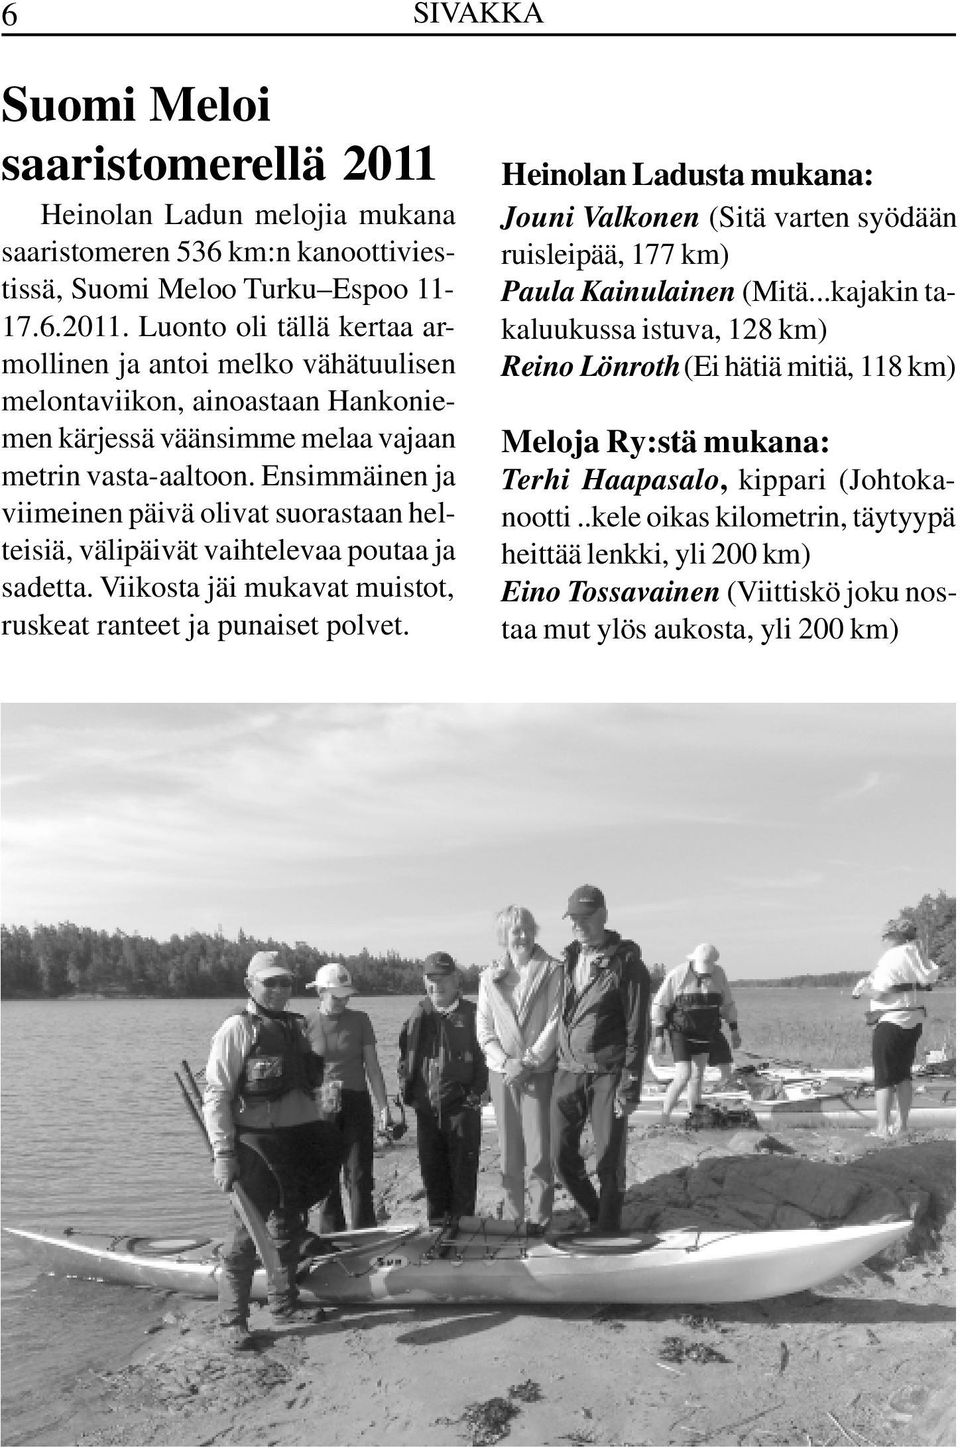 Heinolan Ladusta mukana: Jouni Valkonen (Sitä varten syödään ruisleipää, 177 km) Paula Kainulainen (Mitä.